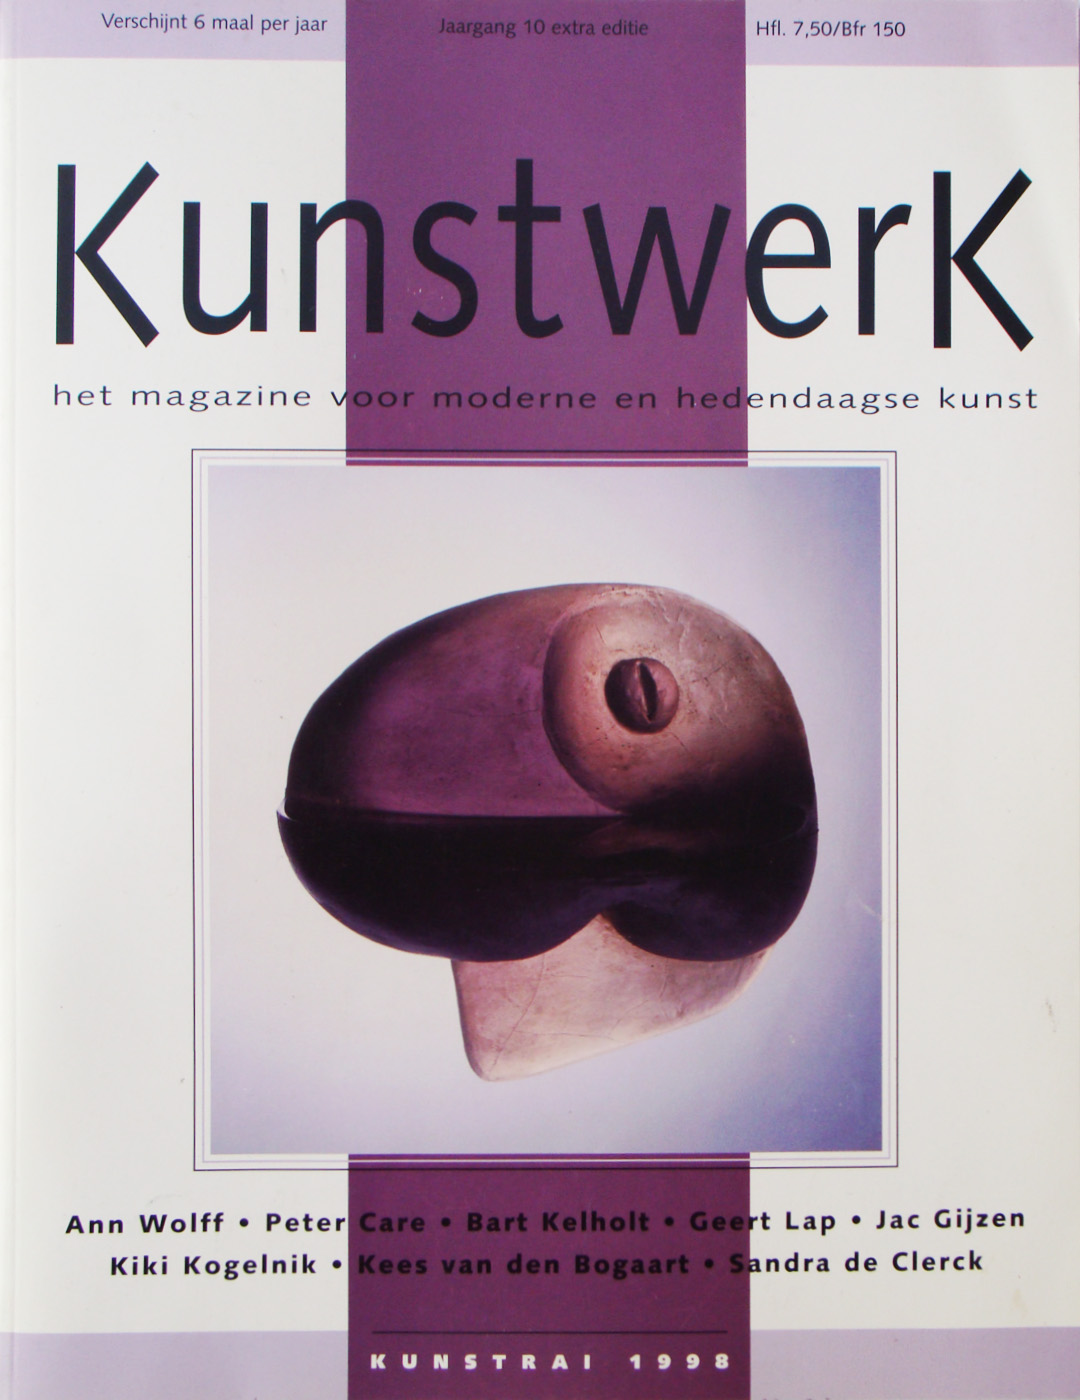 Kunstweek 11